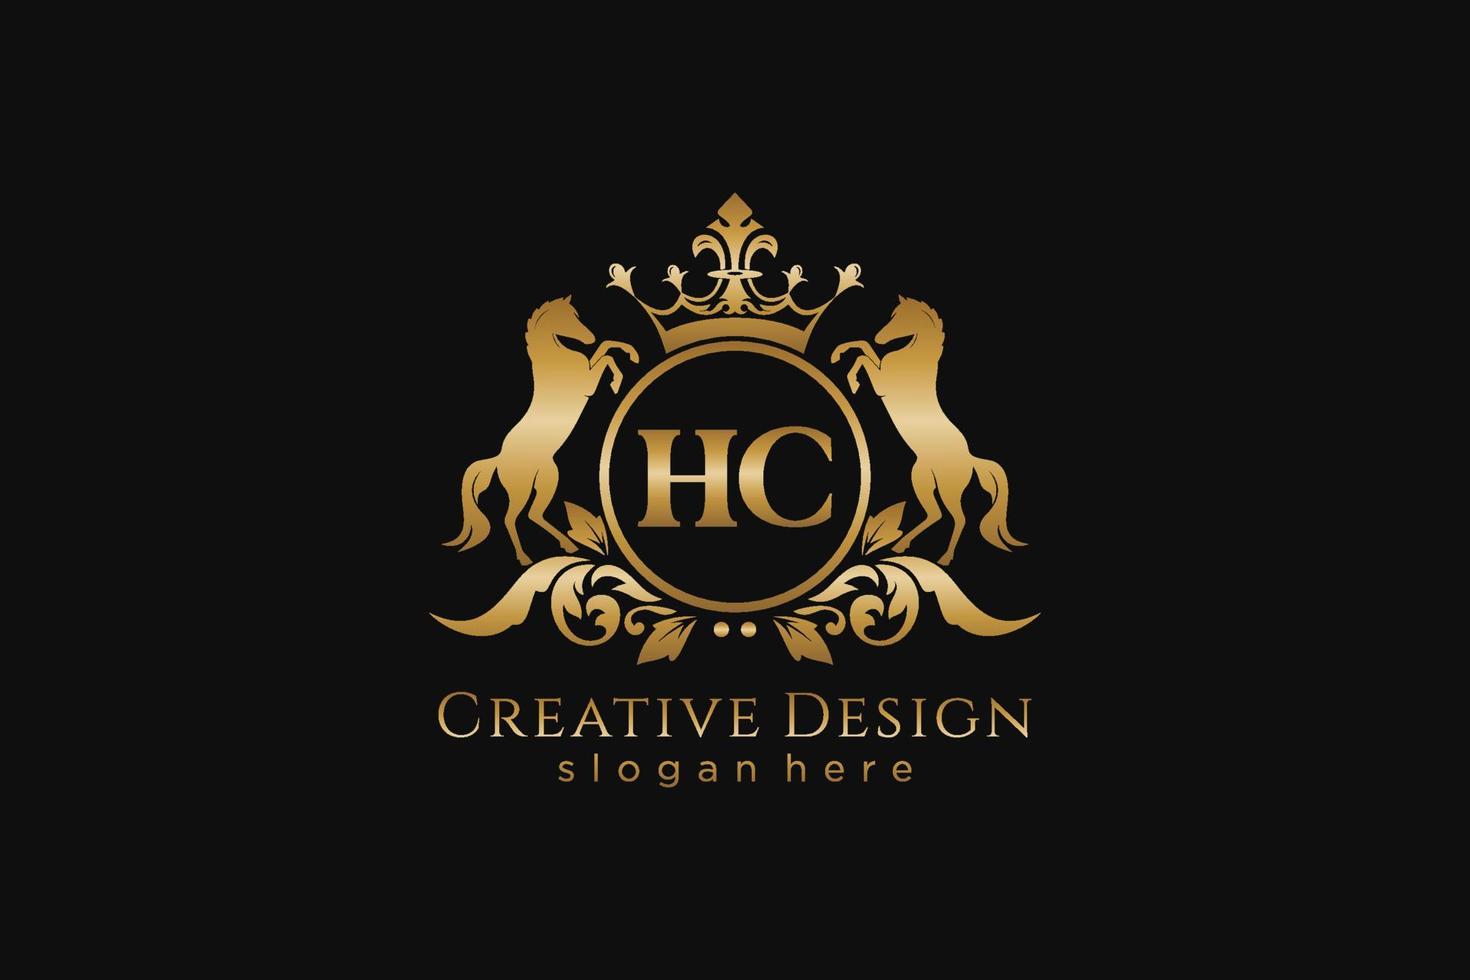 crista dourada retrô inicial hc com círculo e dois cavalos, modelo de crachá com pergaminhos e coroa real - perfeito para projetos de marca luxuosos vetor